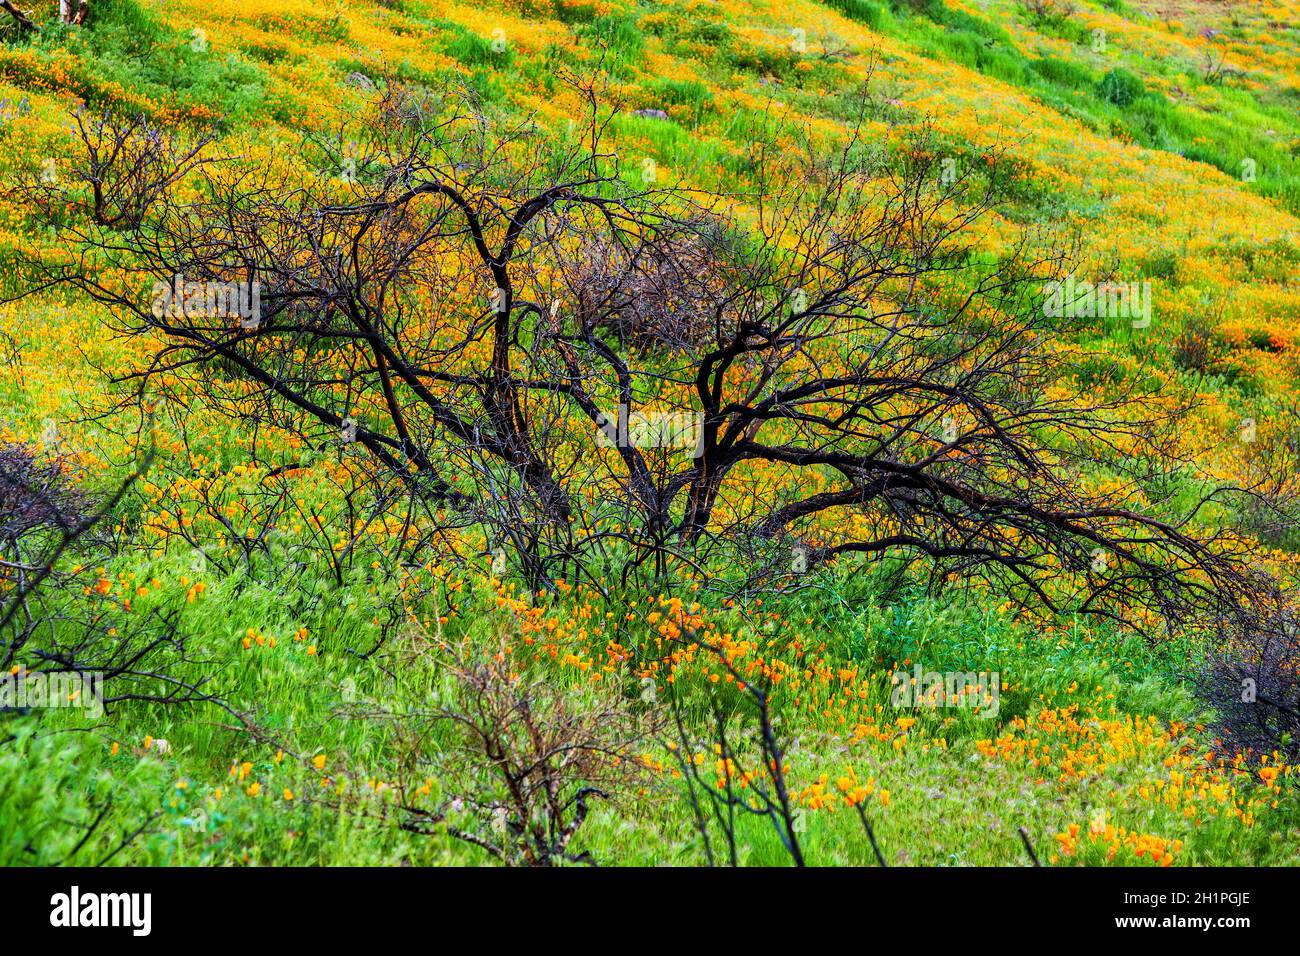 Burnt Tree umgeben von kalifornischen Mohnblumen. Wildblumen nach einem Wildfeuer. Orangefarbene kalifornische Mohnblumen in Blüte umgeben einen verkohlten Baum. Stockfoto